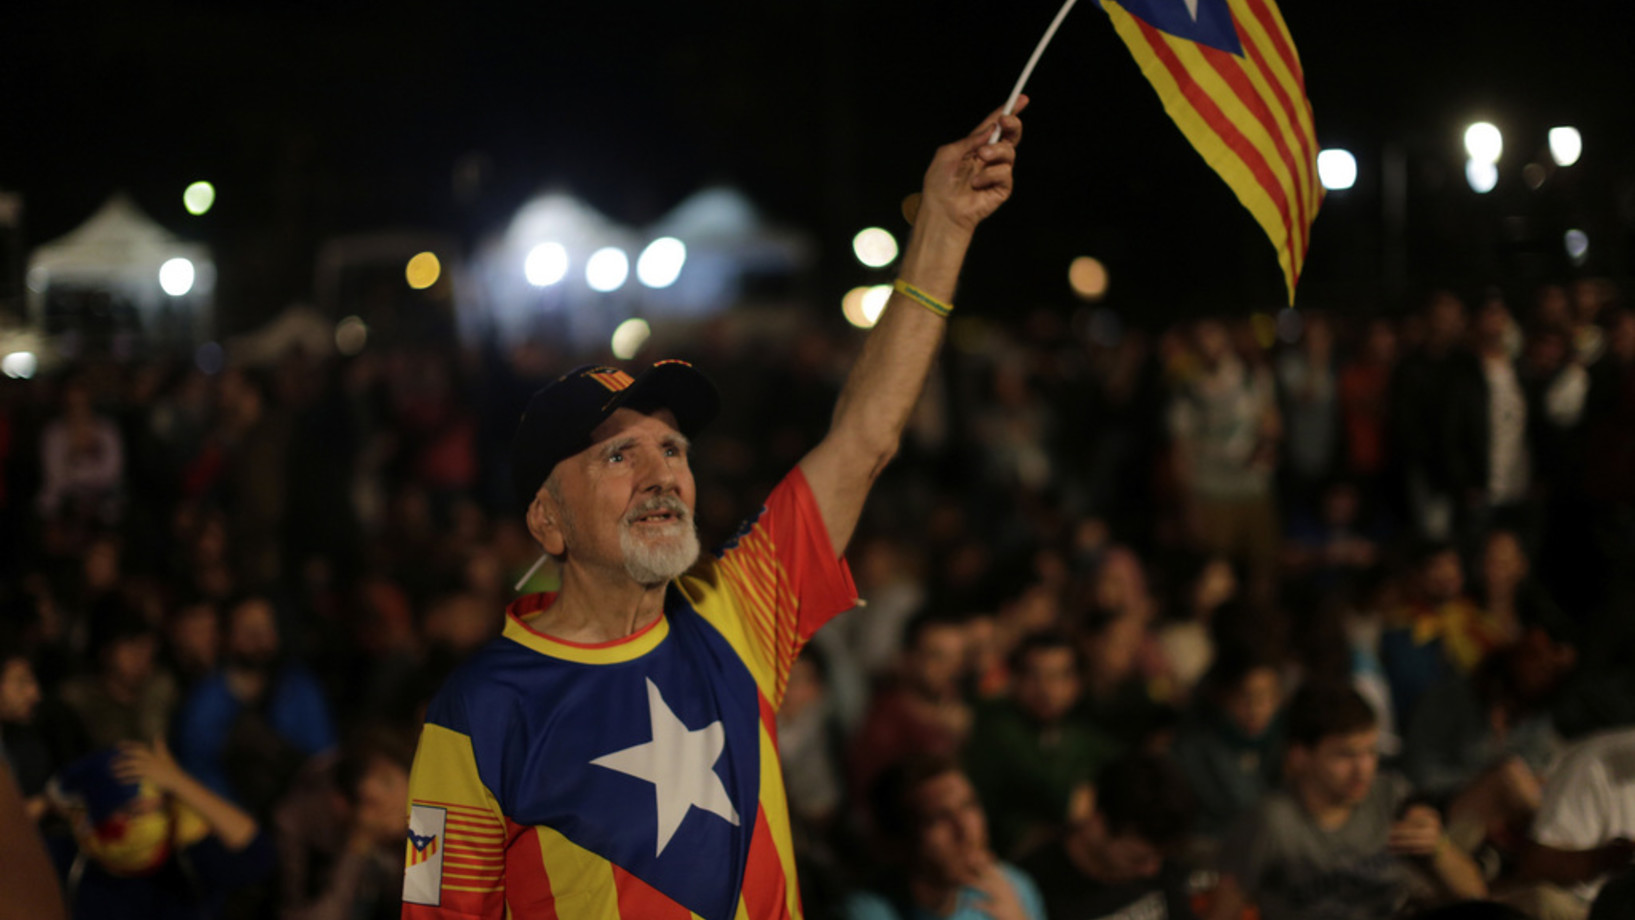 Das Bild zeigt einen Befürworter der Unabhängigkeit an der Siegesfeier auf der Plaça de Catalunya in Barcelona. (Foto: Keystone/AP/Emilio Morenatti)
